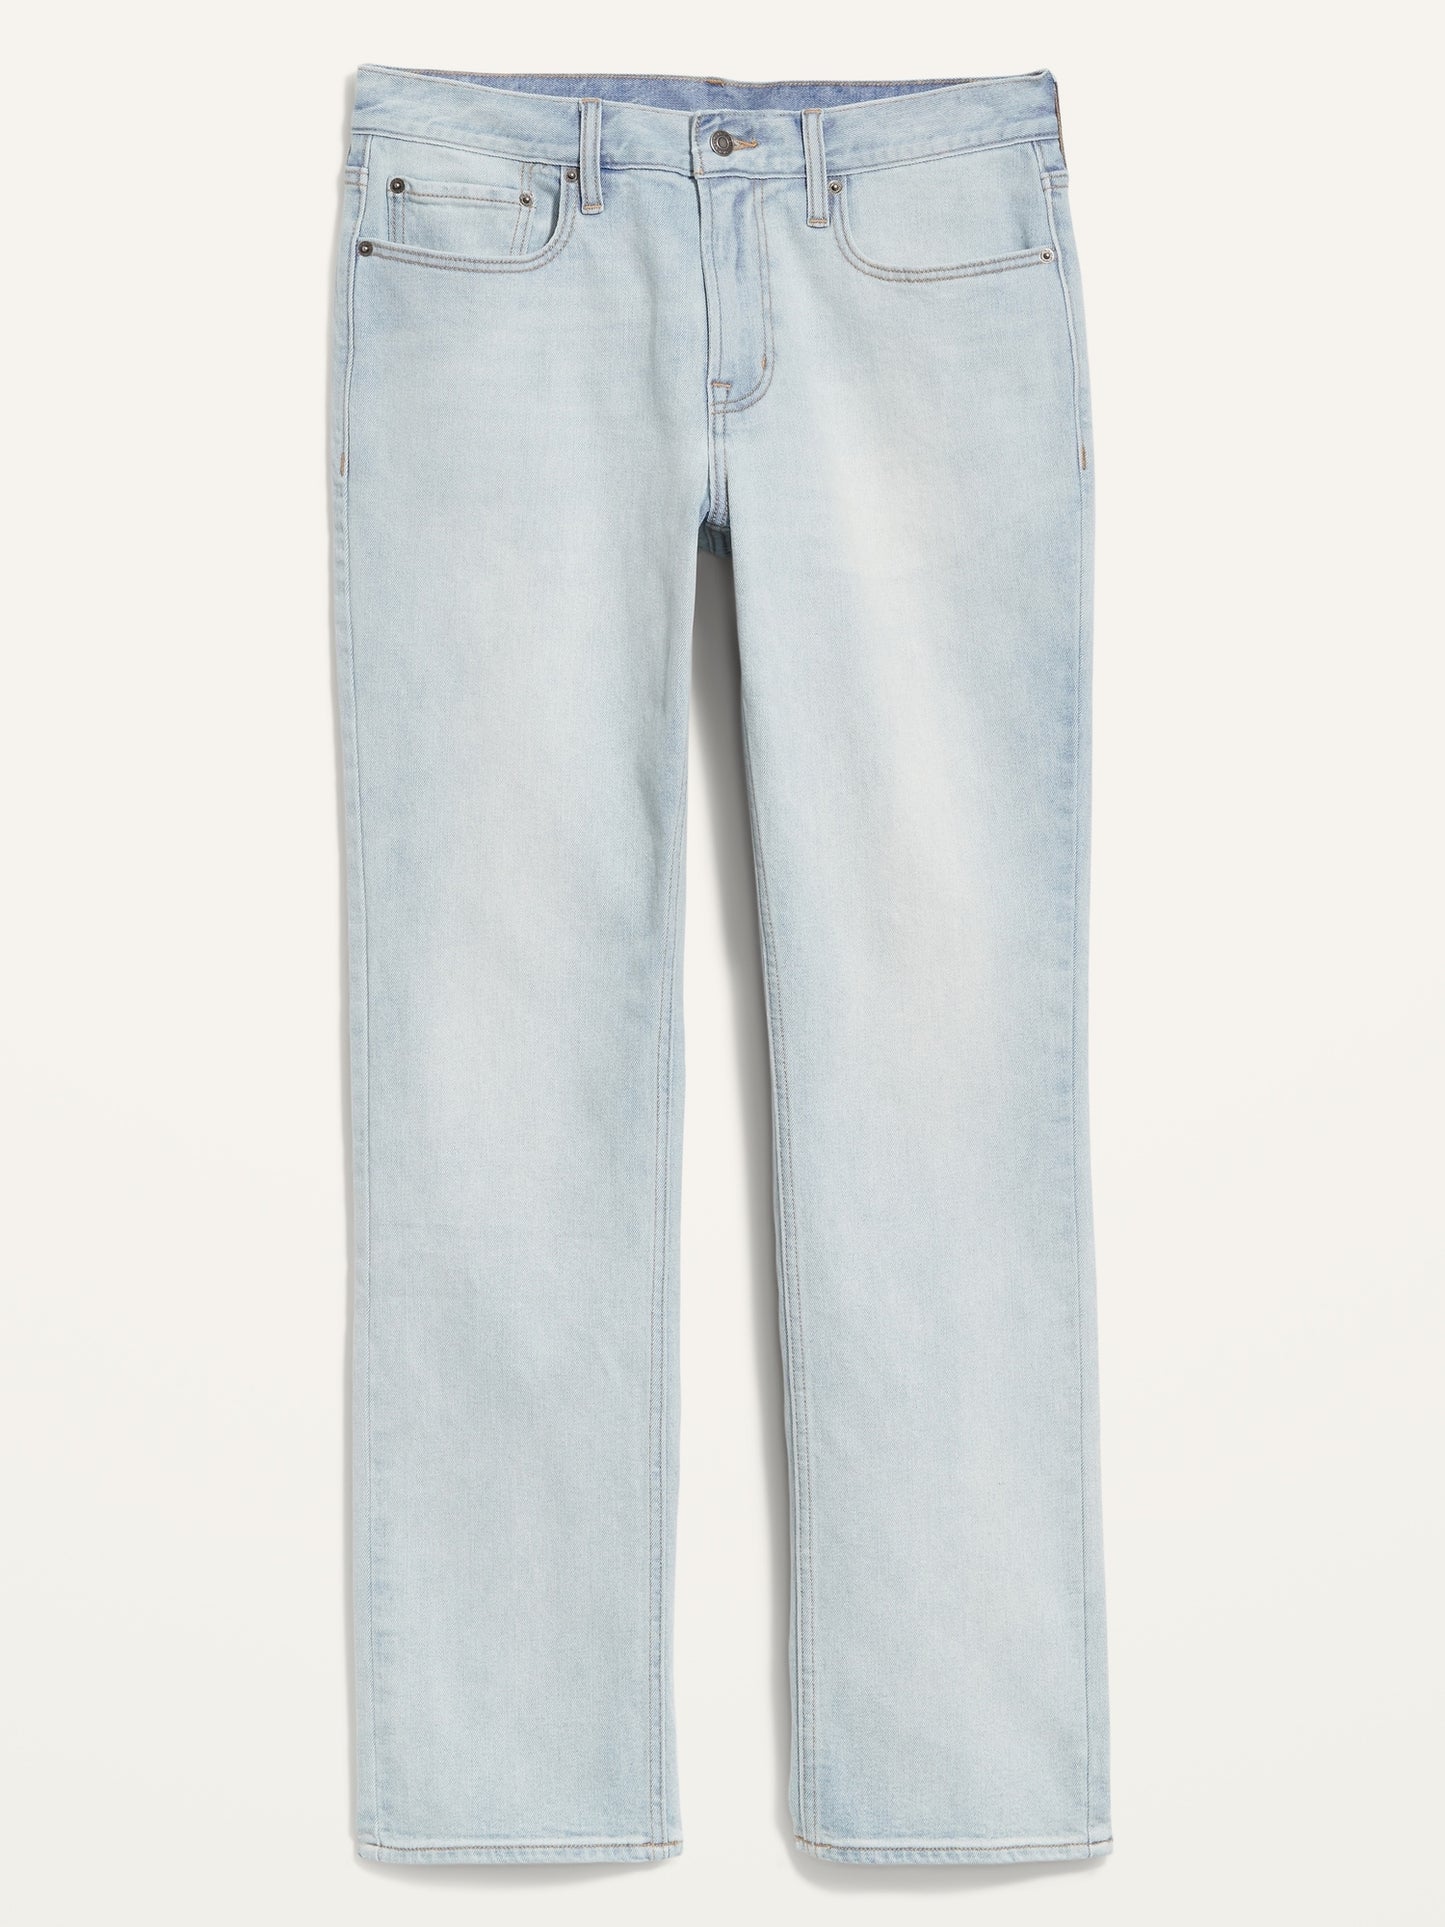 Straight Built-In Flex Light-Wash Jeans for Men